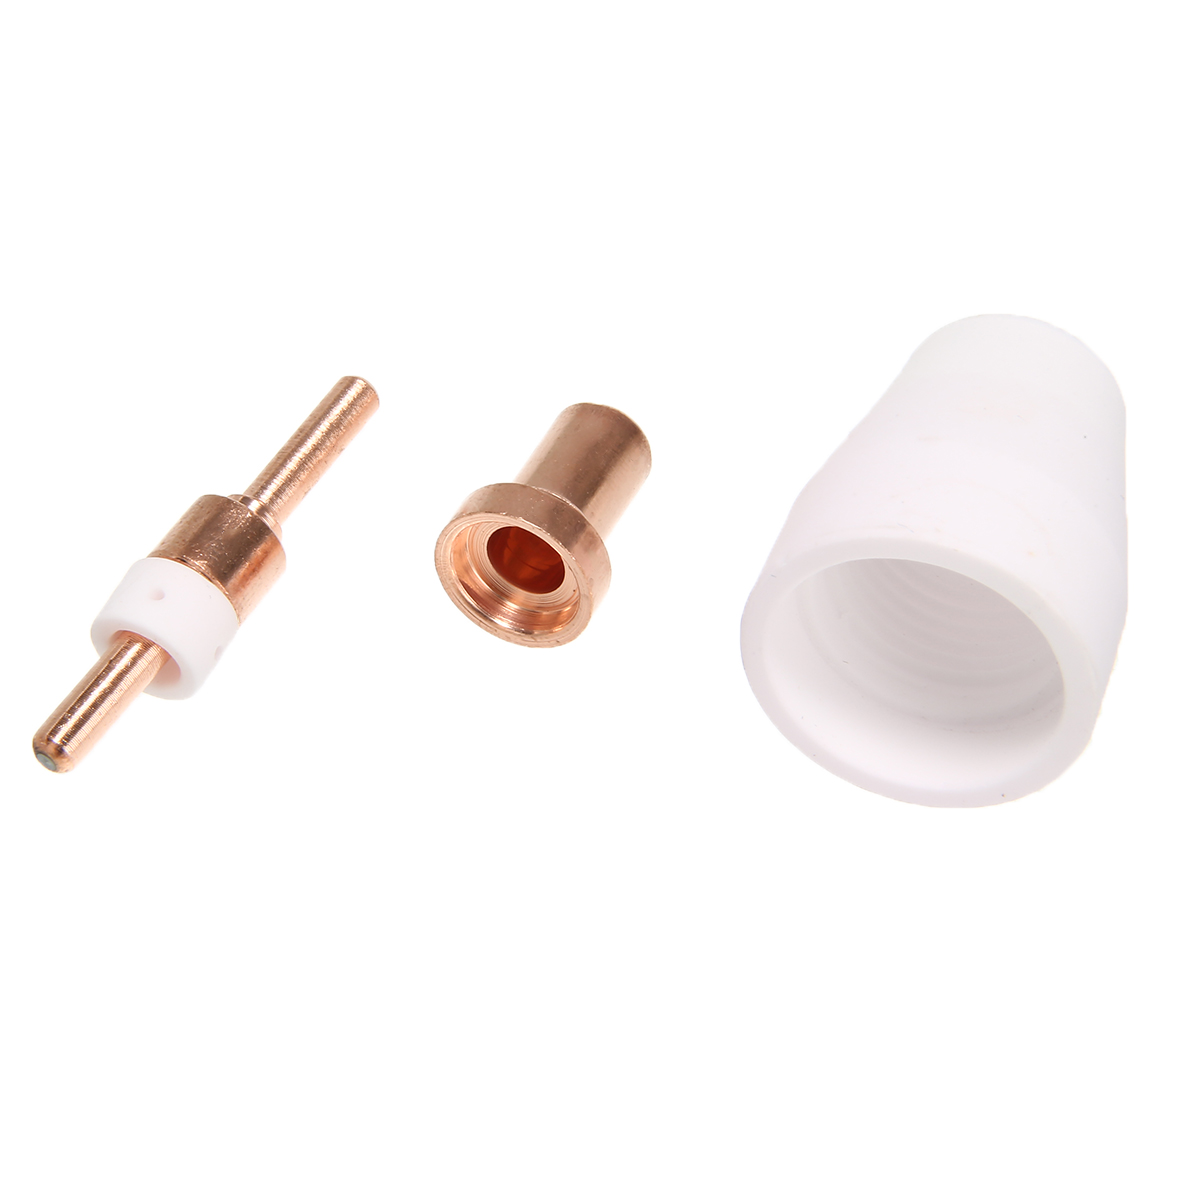 Souprava elektrod a trysek s hrotem plazmové řezačky Spotřební materiál ( (10)